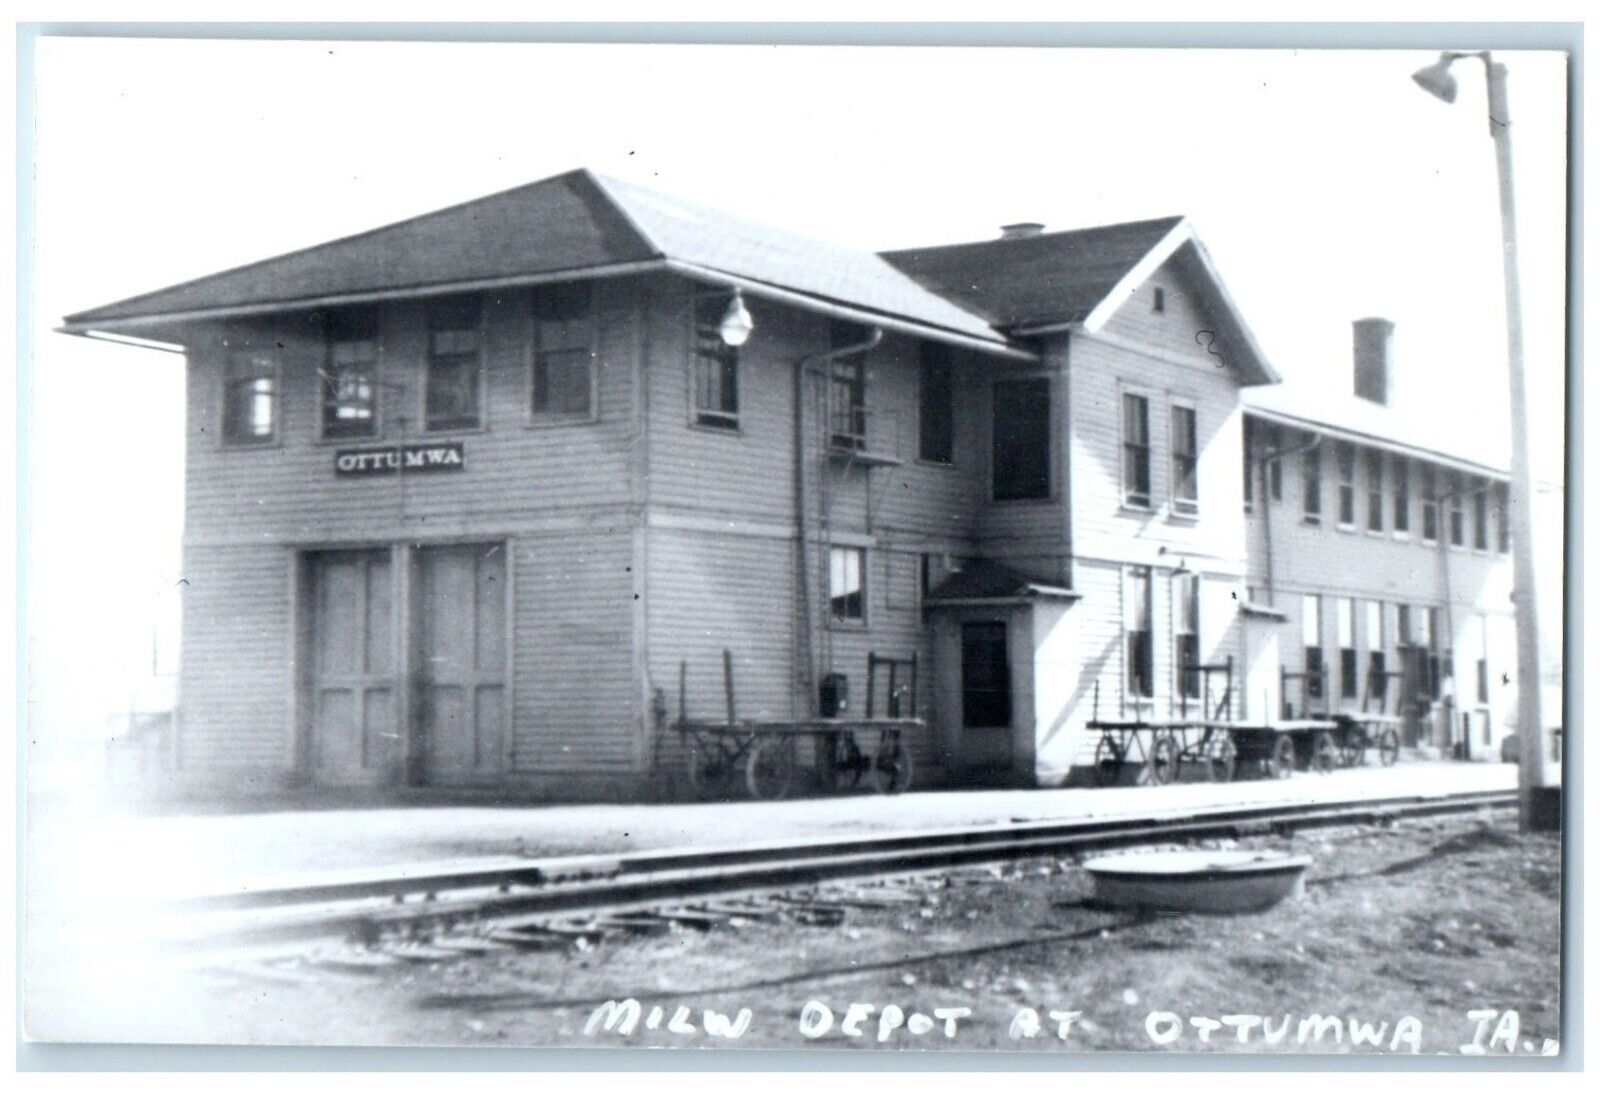 c1960's MILW Depot Ottumwa Iowa Railroad Train Depot Station RPPC Photo Postcard